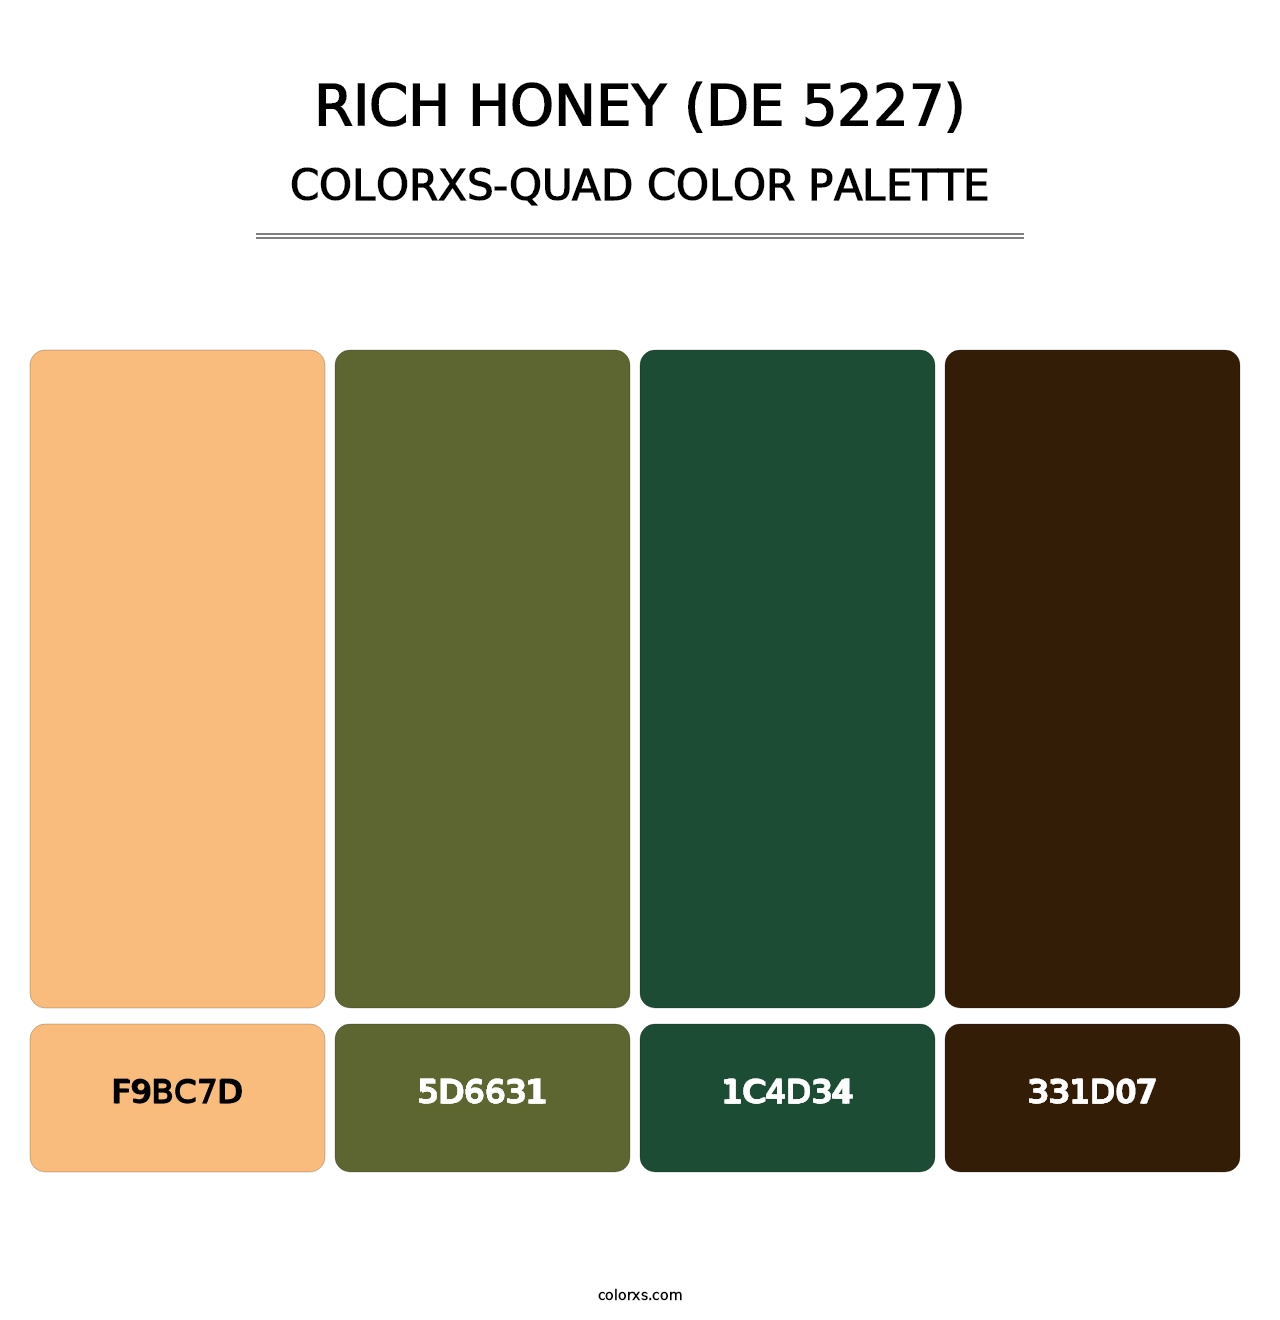 Rich Honey (DE 5227) - Colorxs Quad Palette